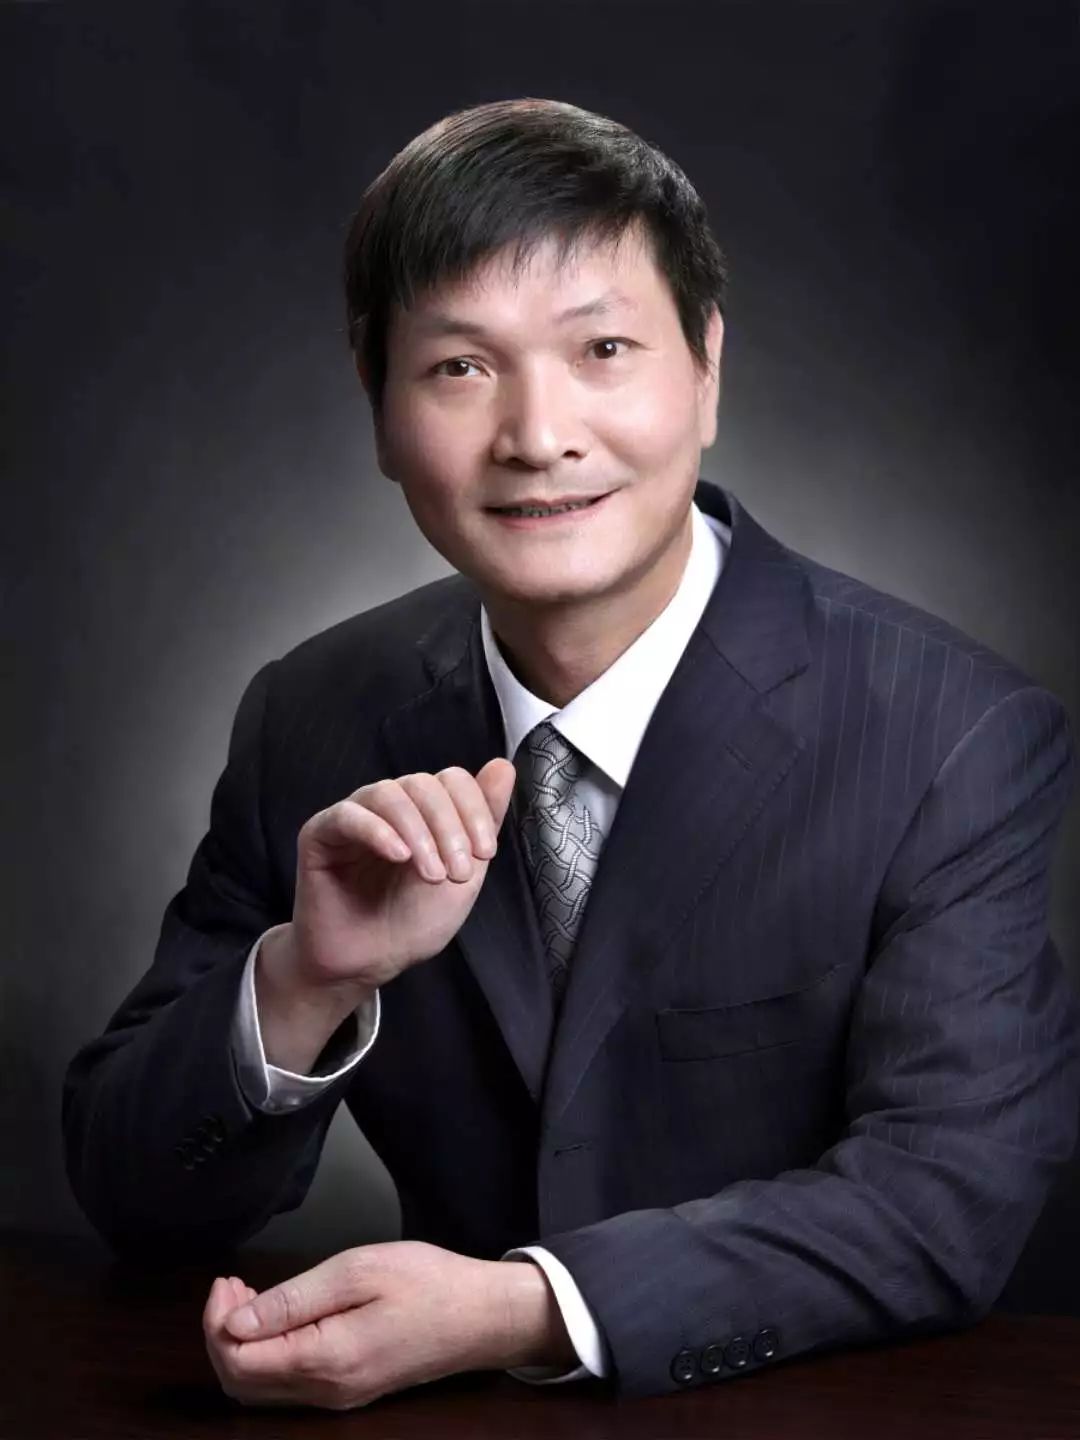 叶必丰教授 上海社科院法学所所长 